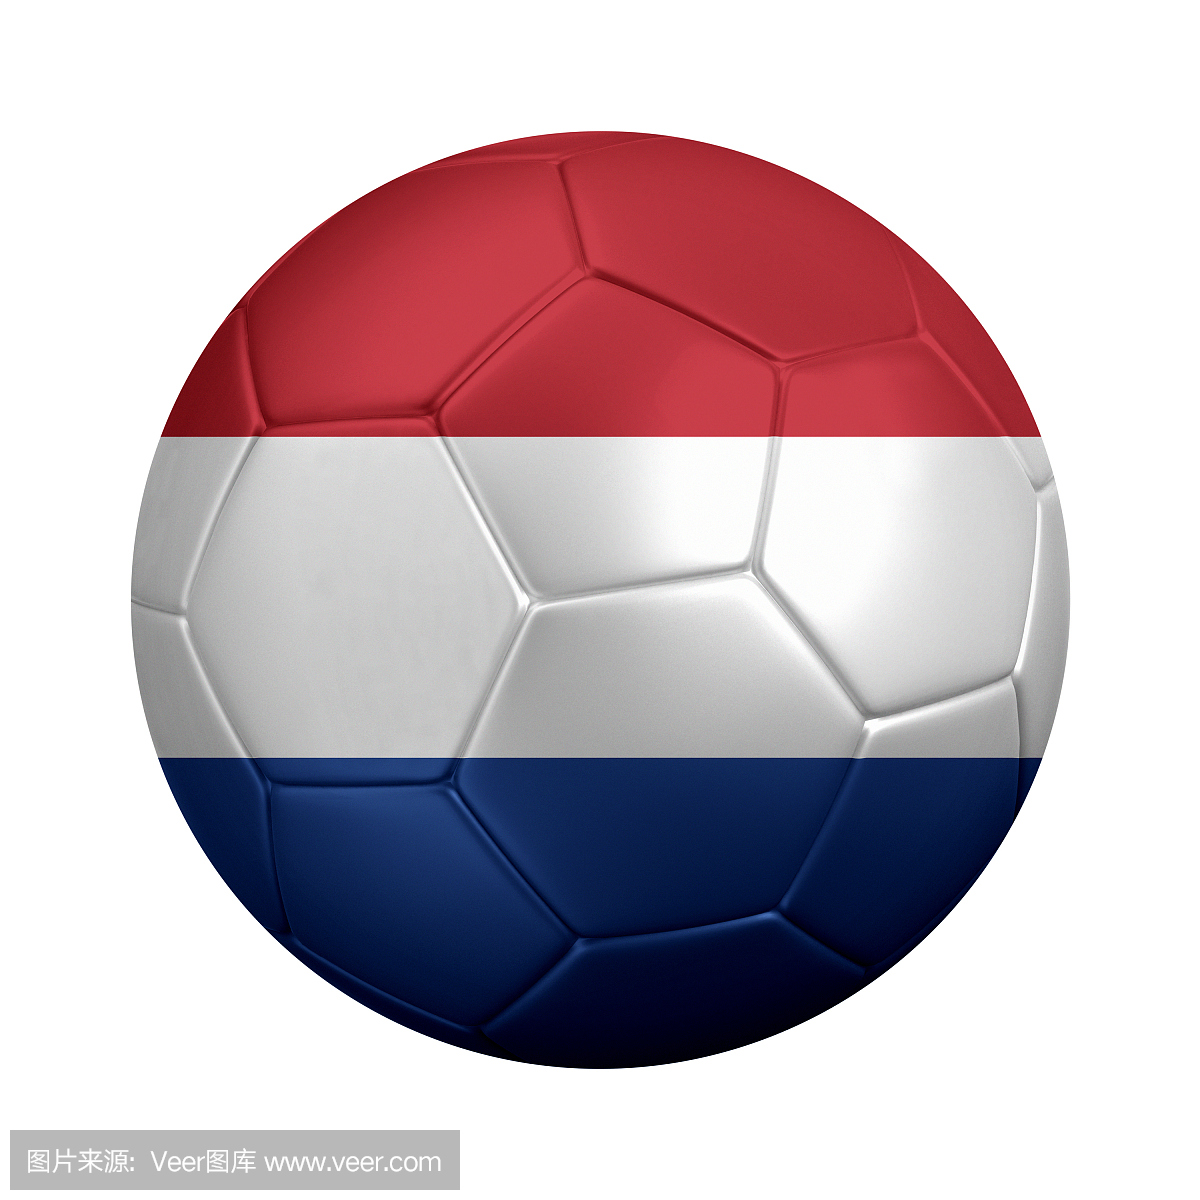 荷兰国旗的足球